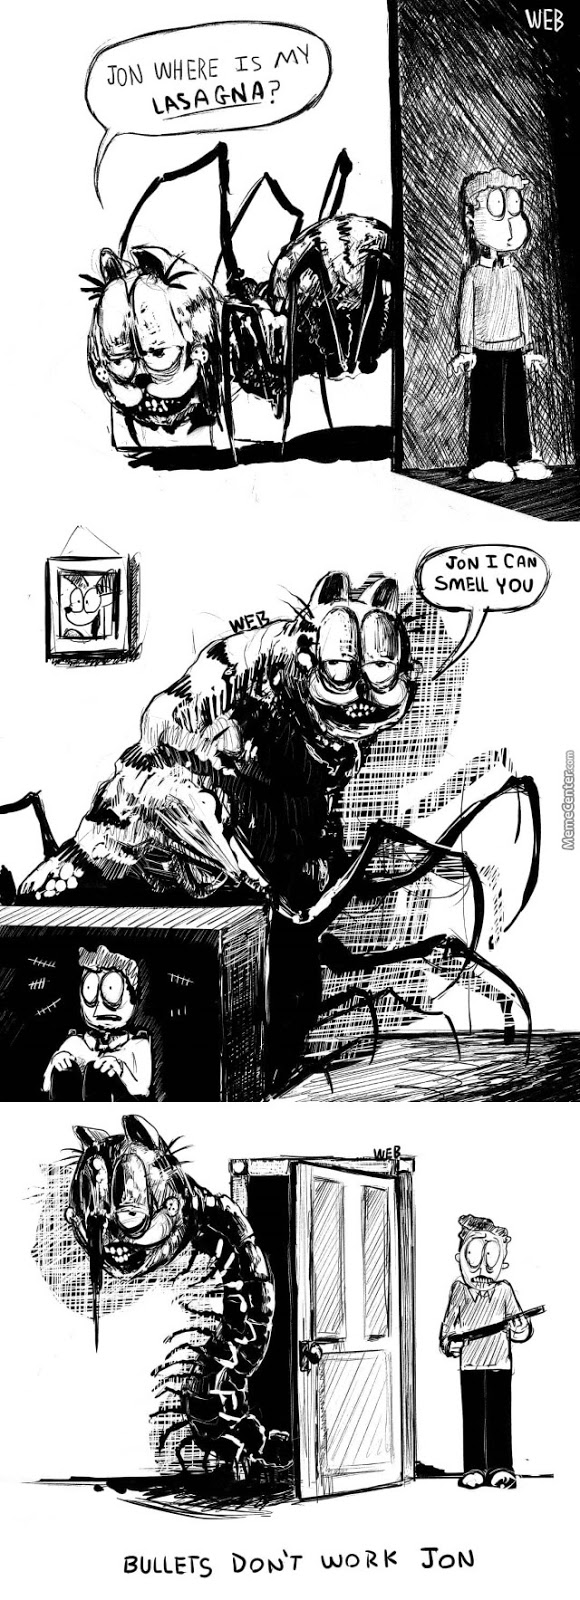 RPG, manga , quadrinhos , cultura em geral: Garfield terror Consume